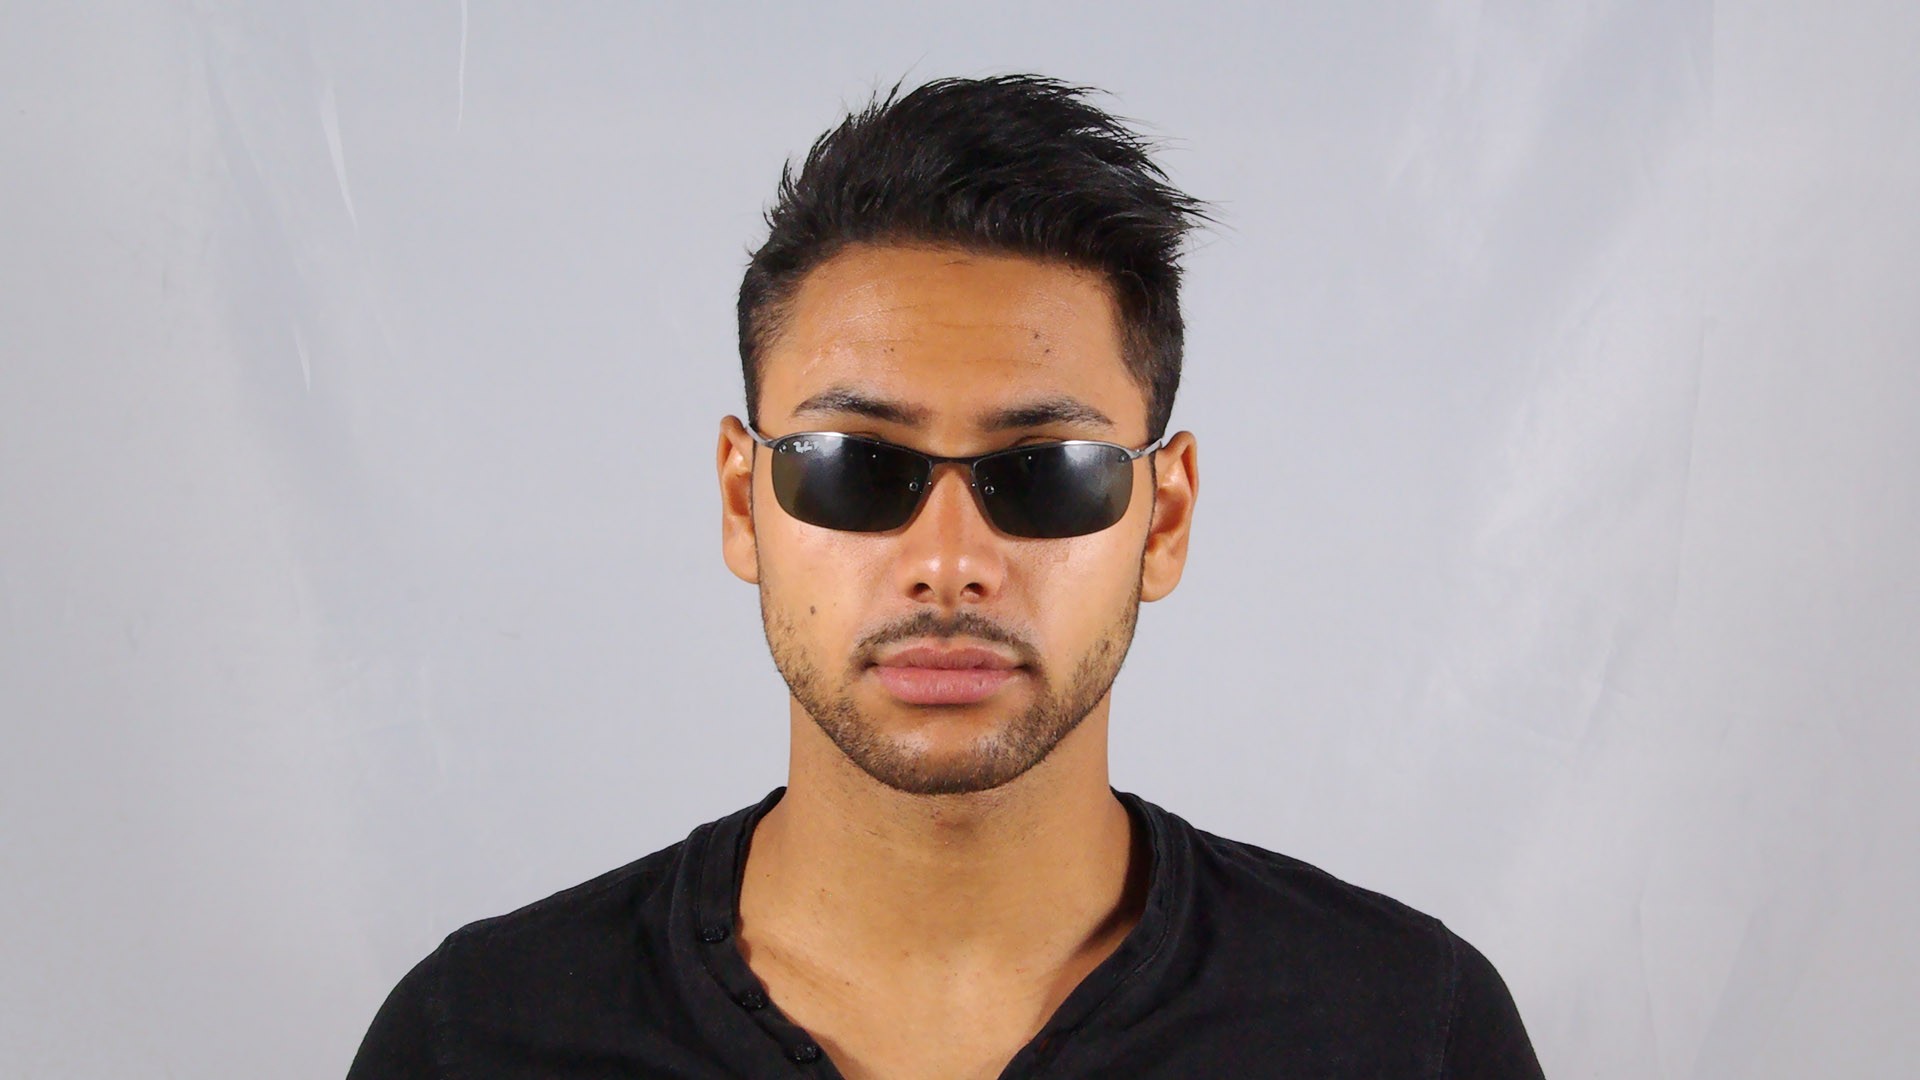 ray ban sunglasses 3183 polarized